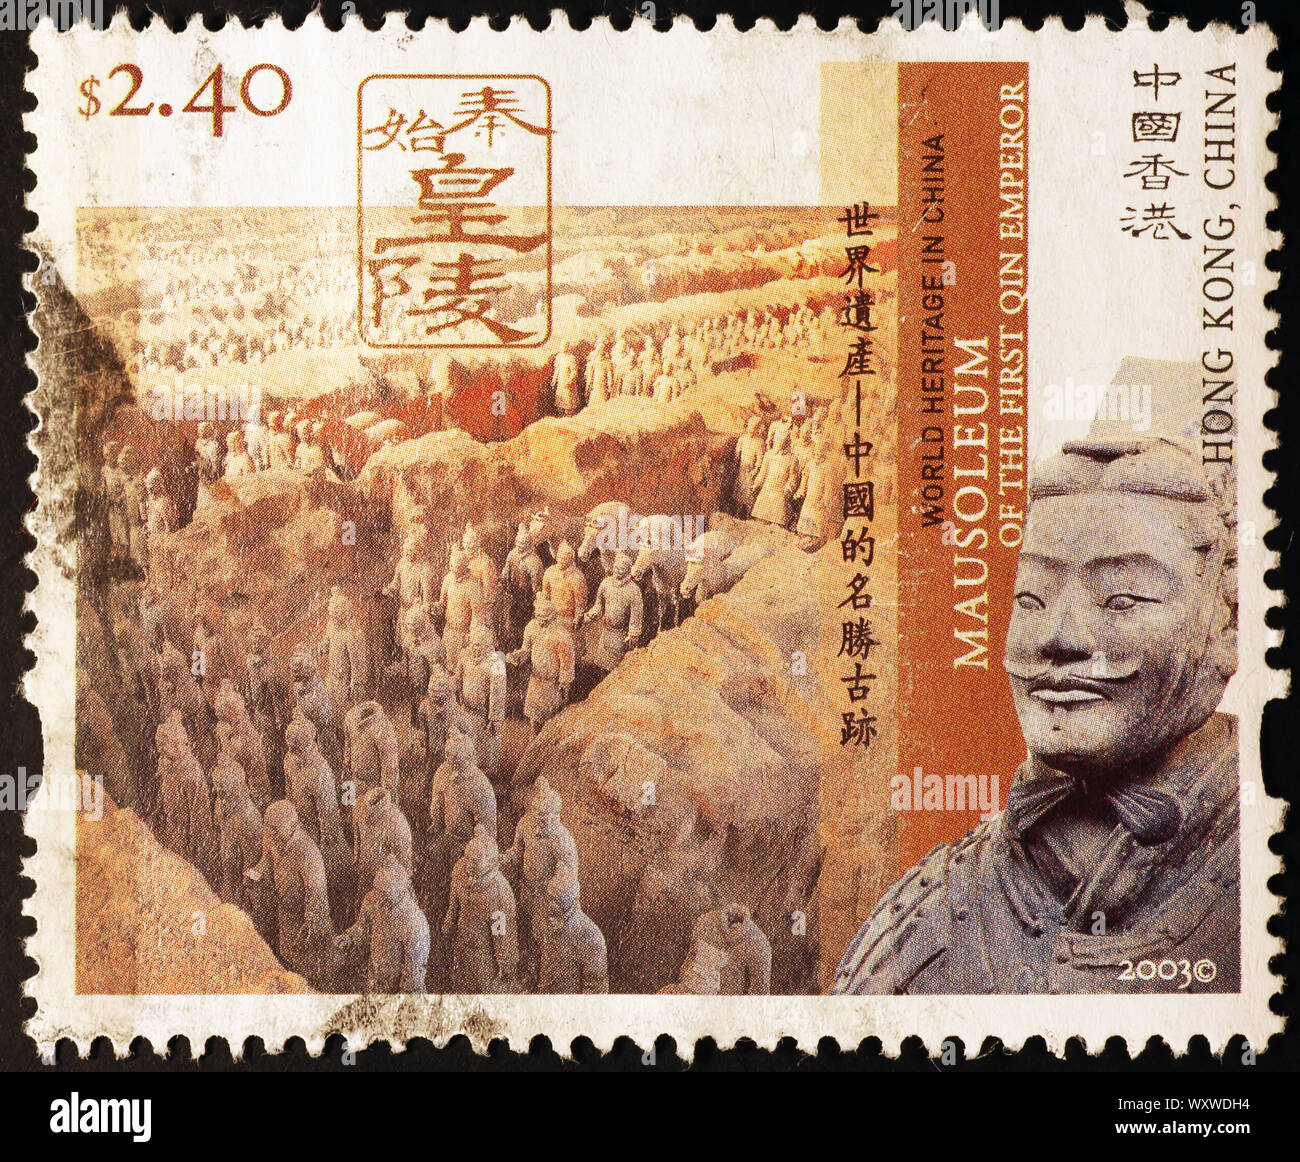 Alte Terrakotta Armee auf Briefmarke von Hong Kong Stockfoto